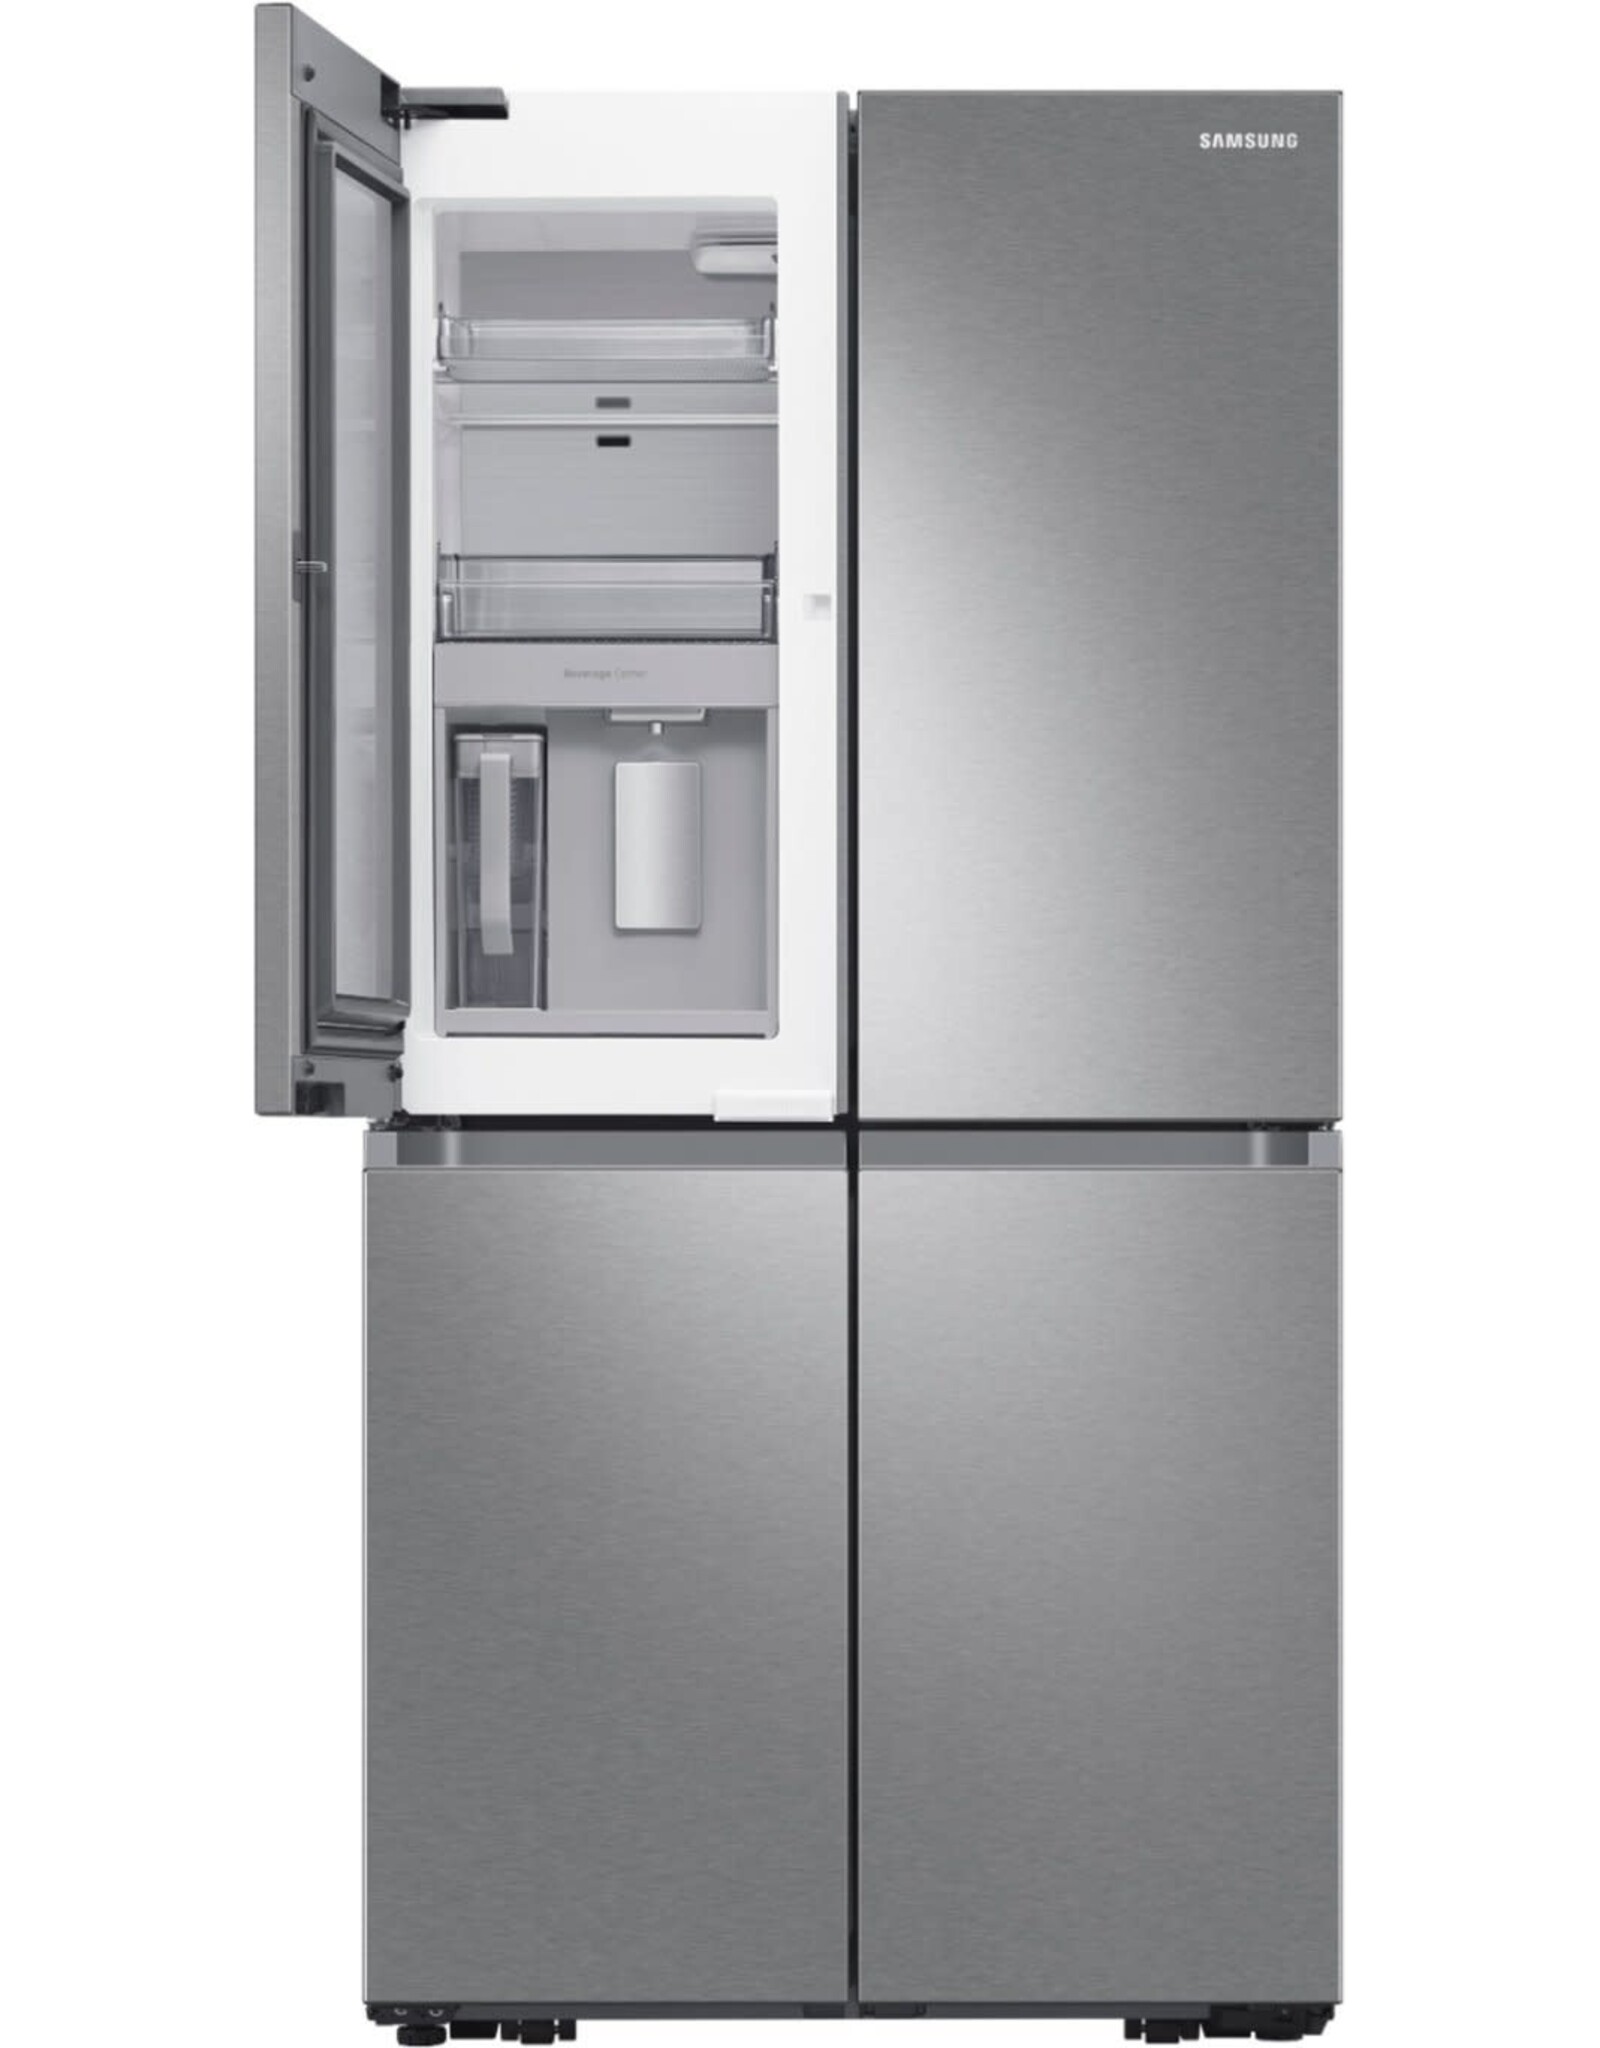 SAMSUNG Samsung 23 cu. ft. Counter Depth 4-Door French Door Refrigerator with Beverage Center in Stainless Steel